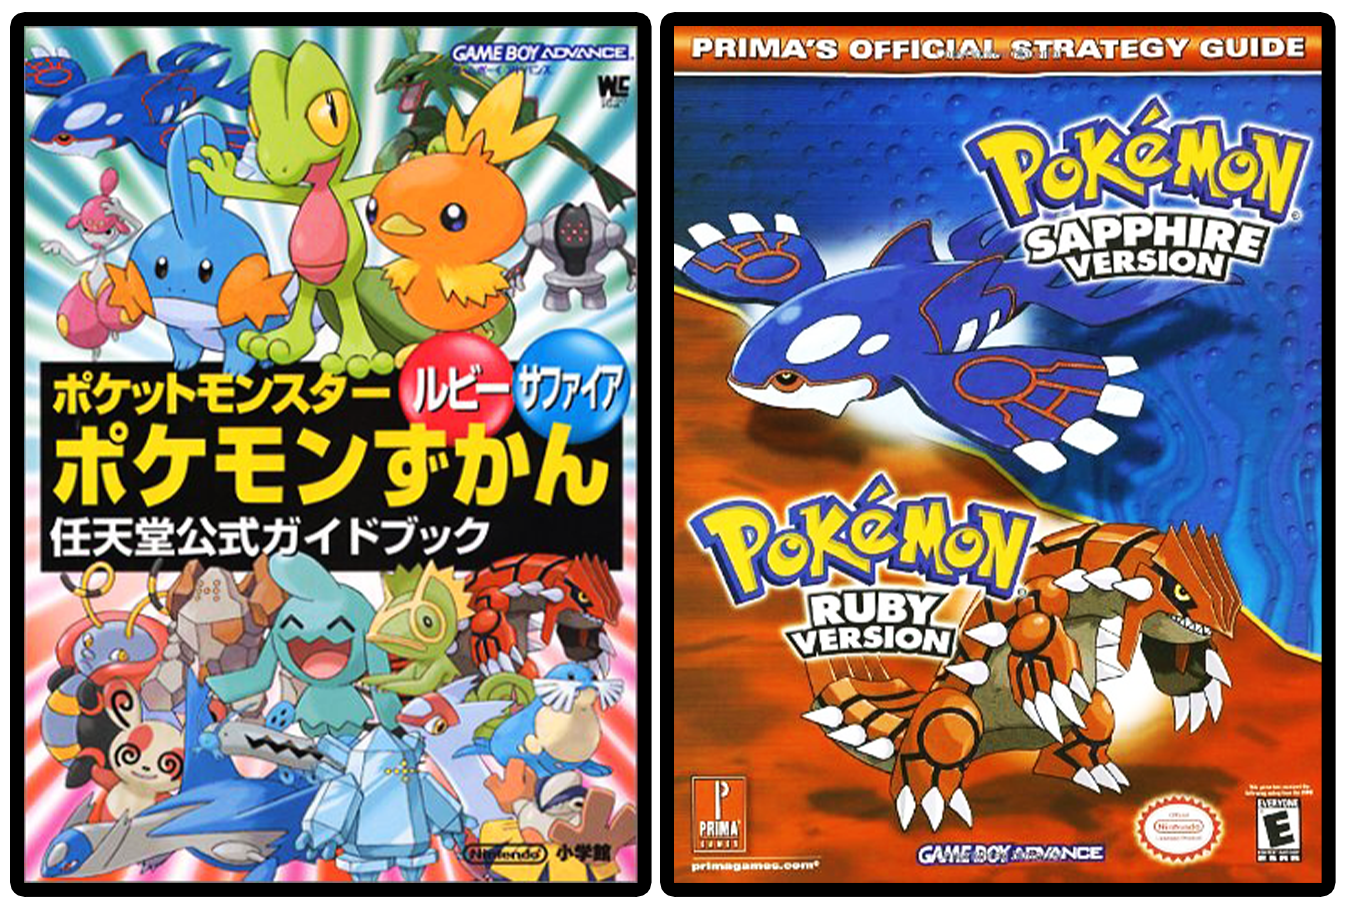 Pokemon Diamond & Pearl Pokedex: Prima Official Game Guide Vol. 2